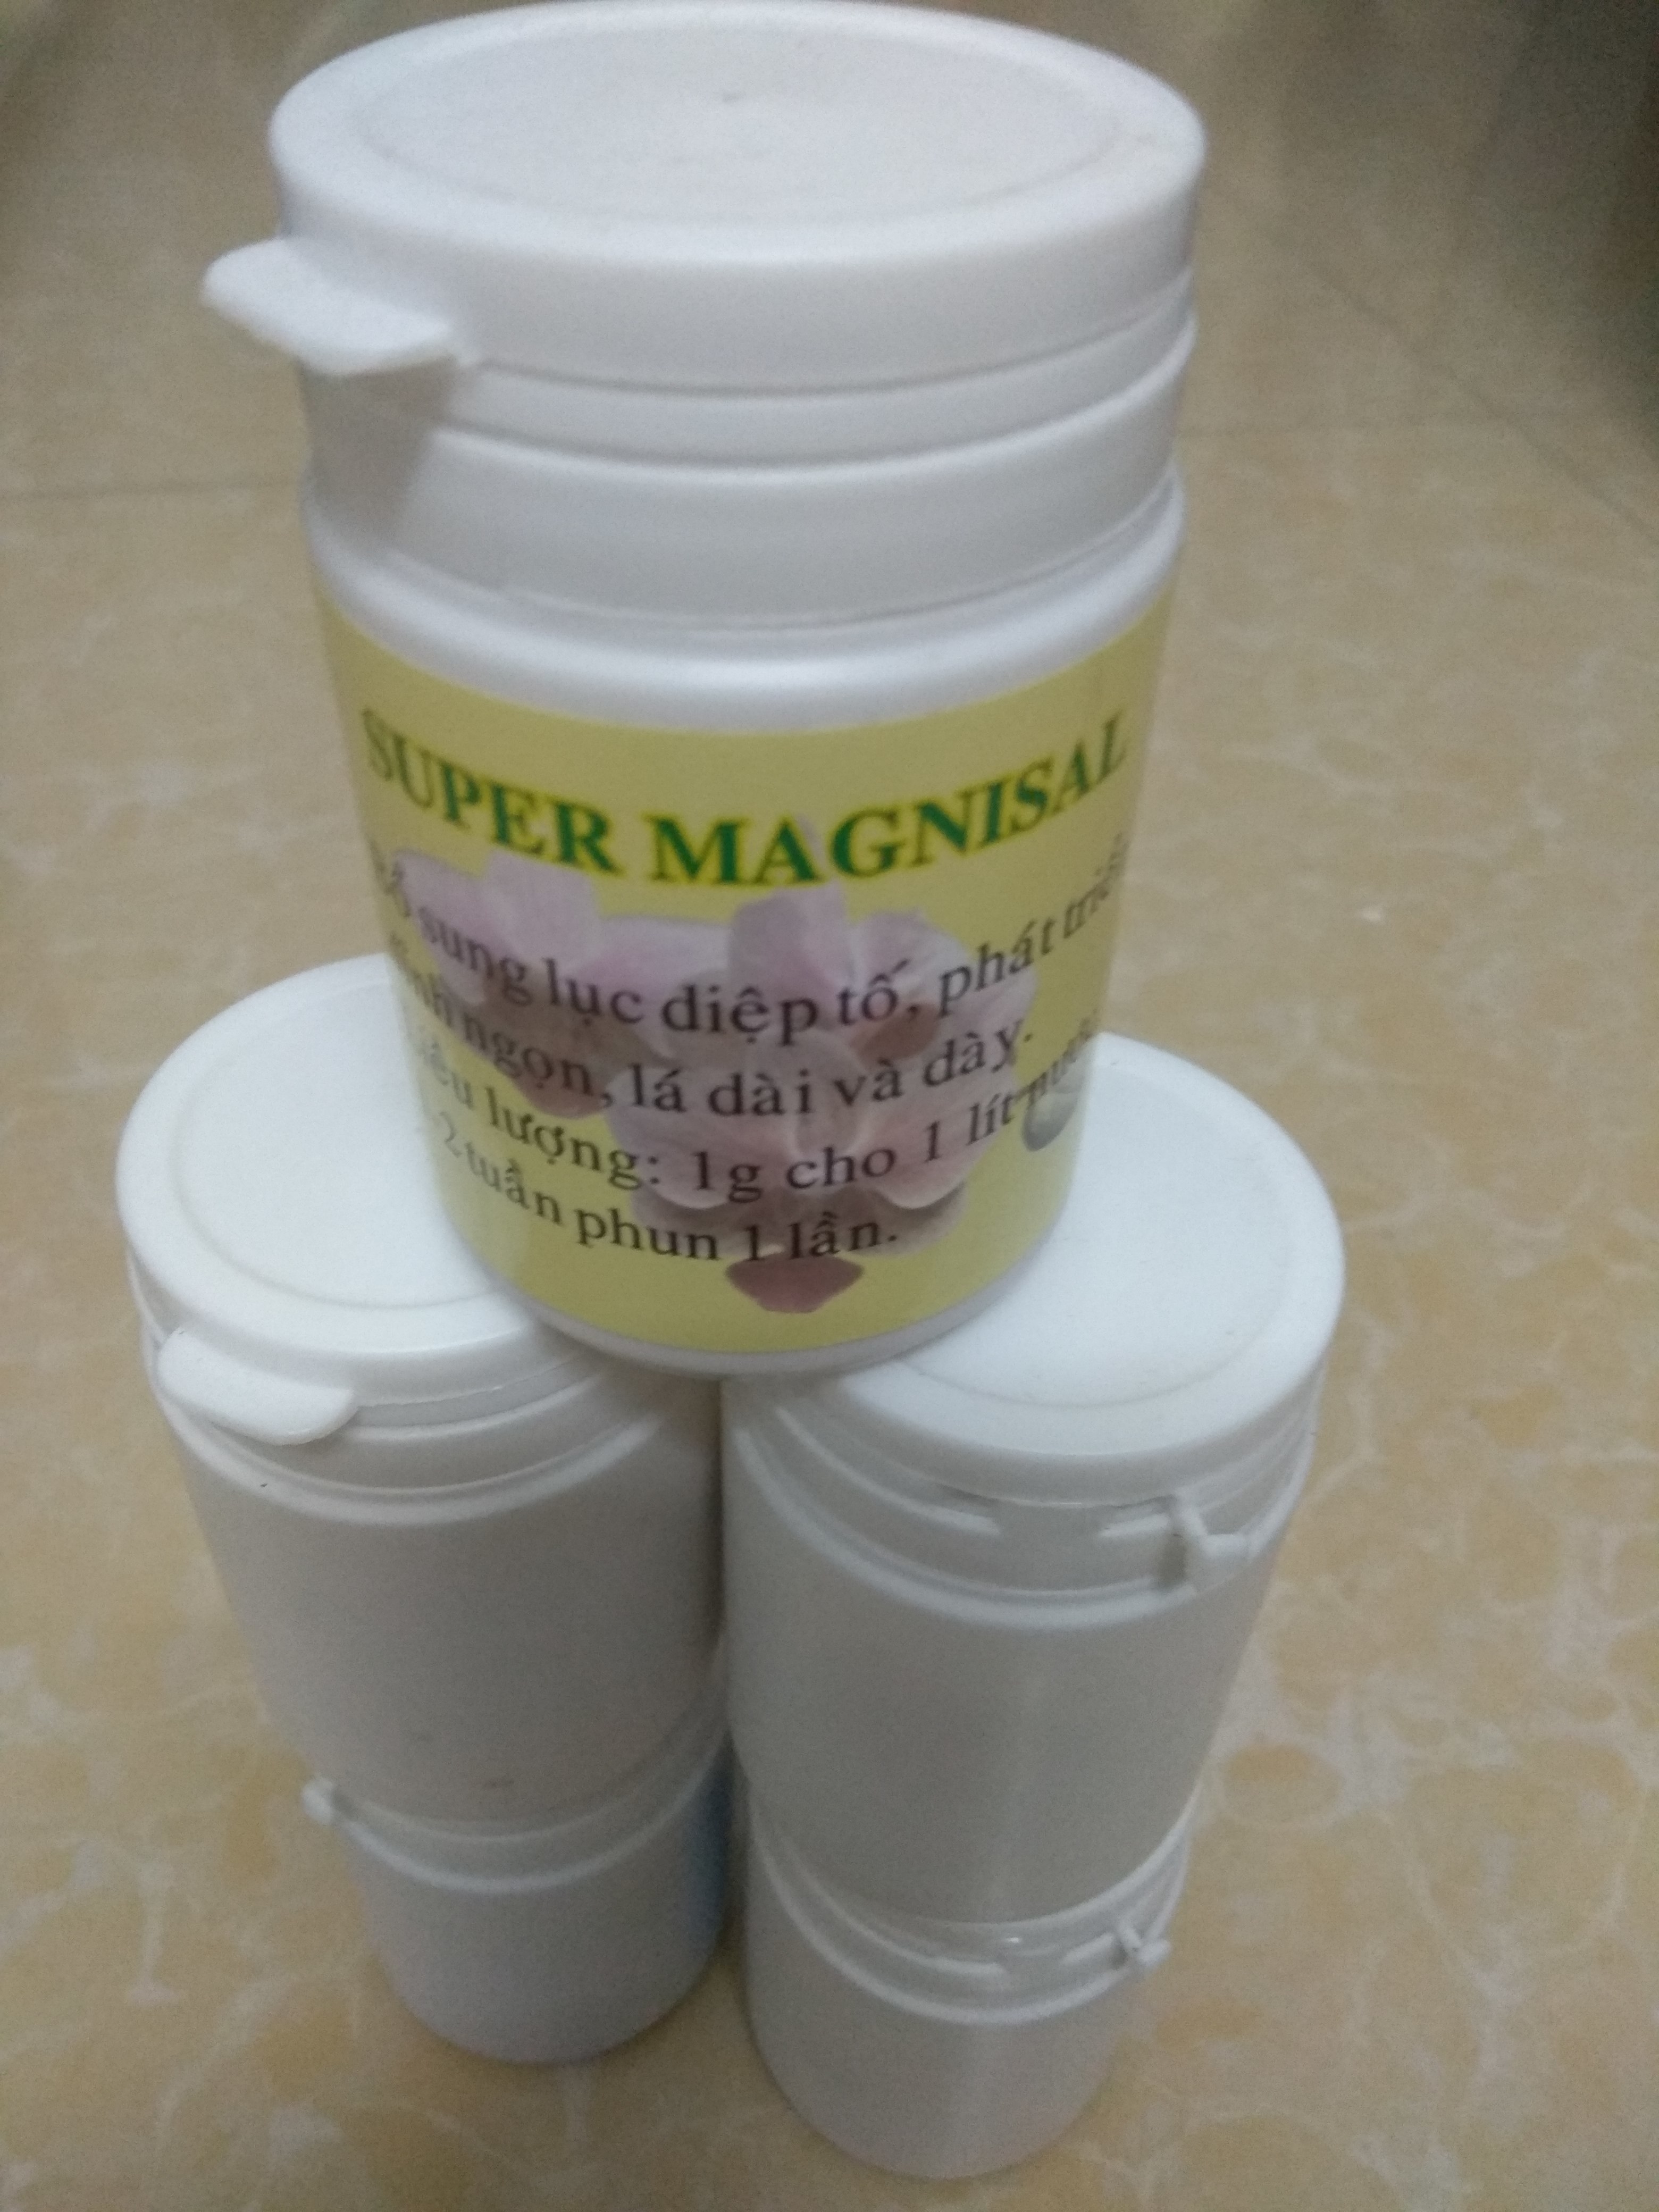 Phân bón lá Super magnisal bổ sung diệp lục tố - 100 g